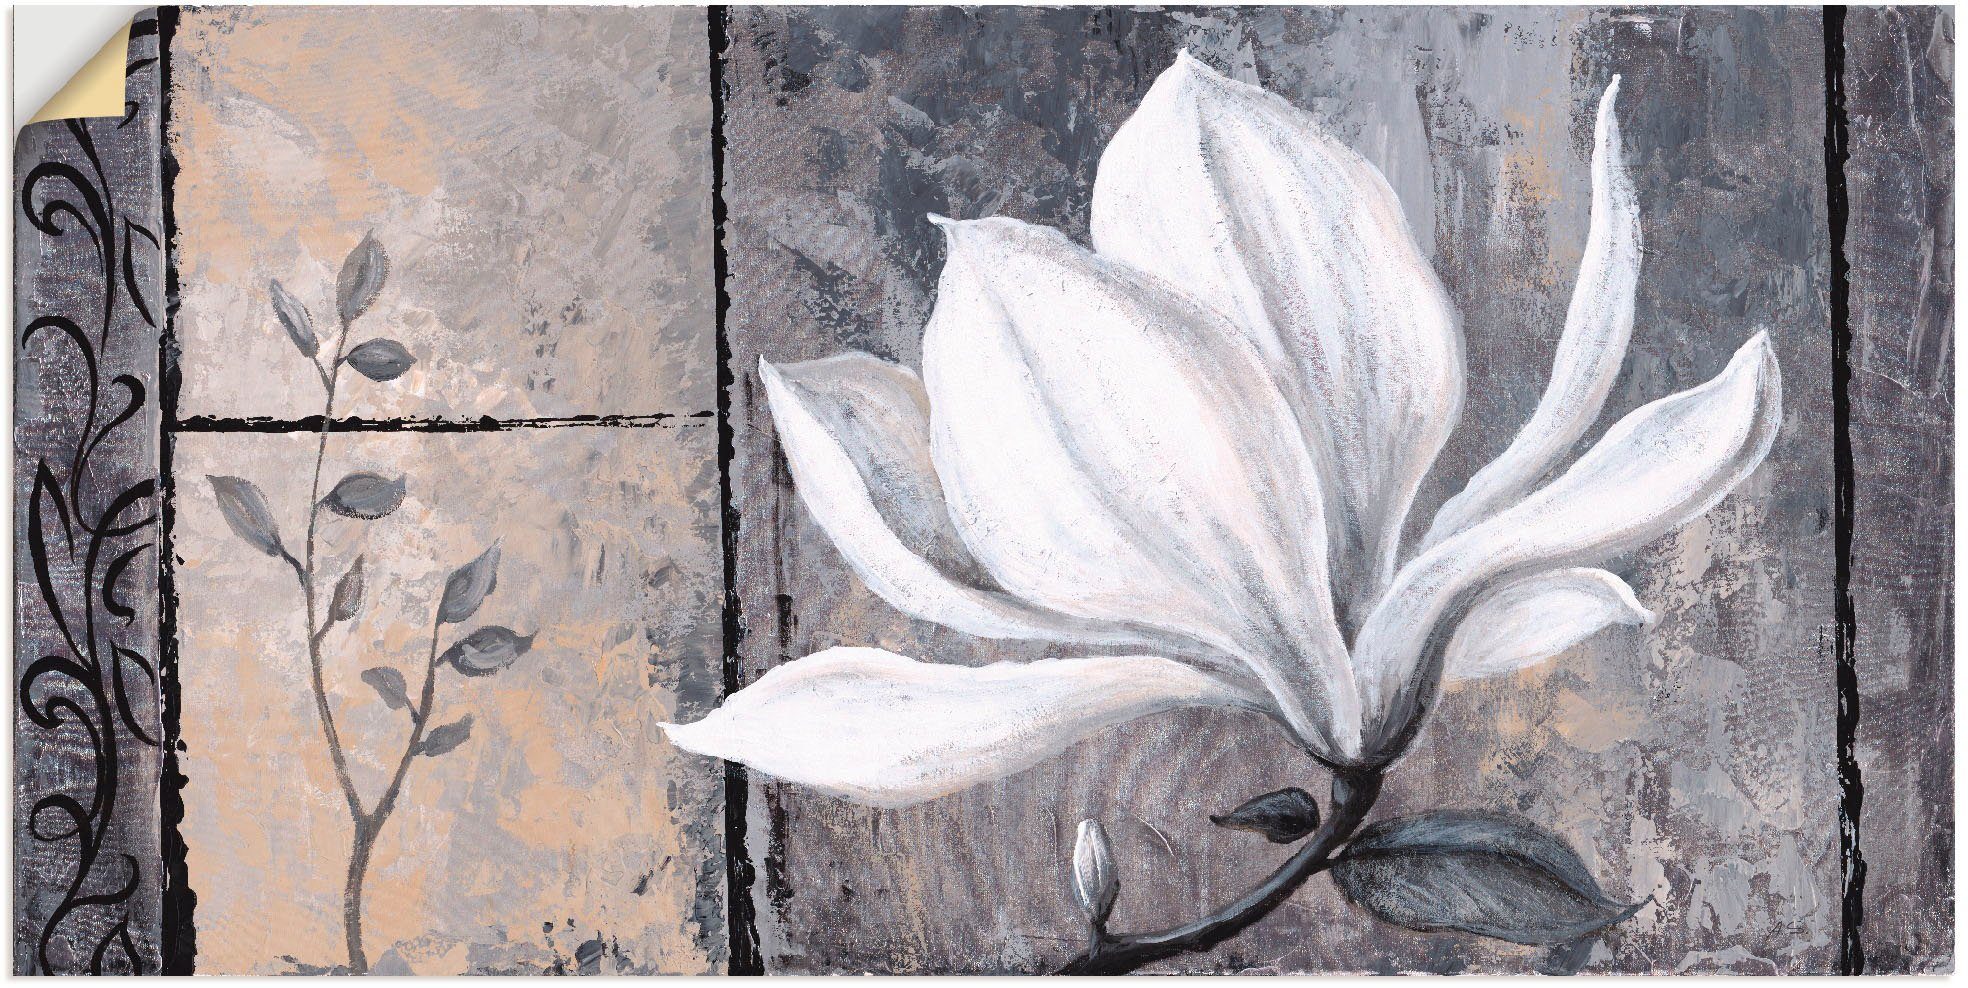 Artland Artprint Klassieke magnolia in vele afmetingen & productsoorten - artprint van aluminium / artprint voor buiten, artprint op linnen, poster, muursticker / wandfolie ook ges